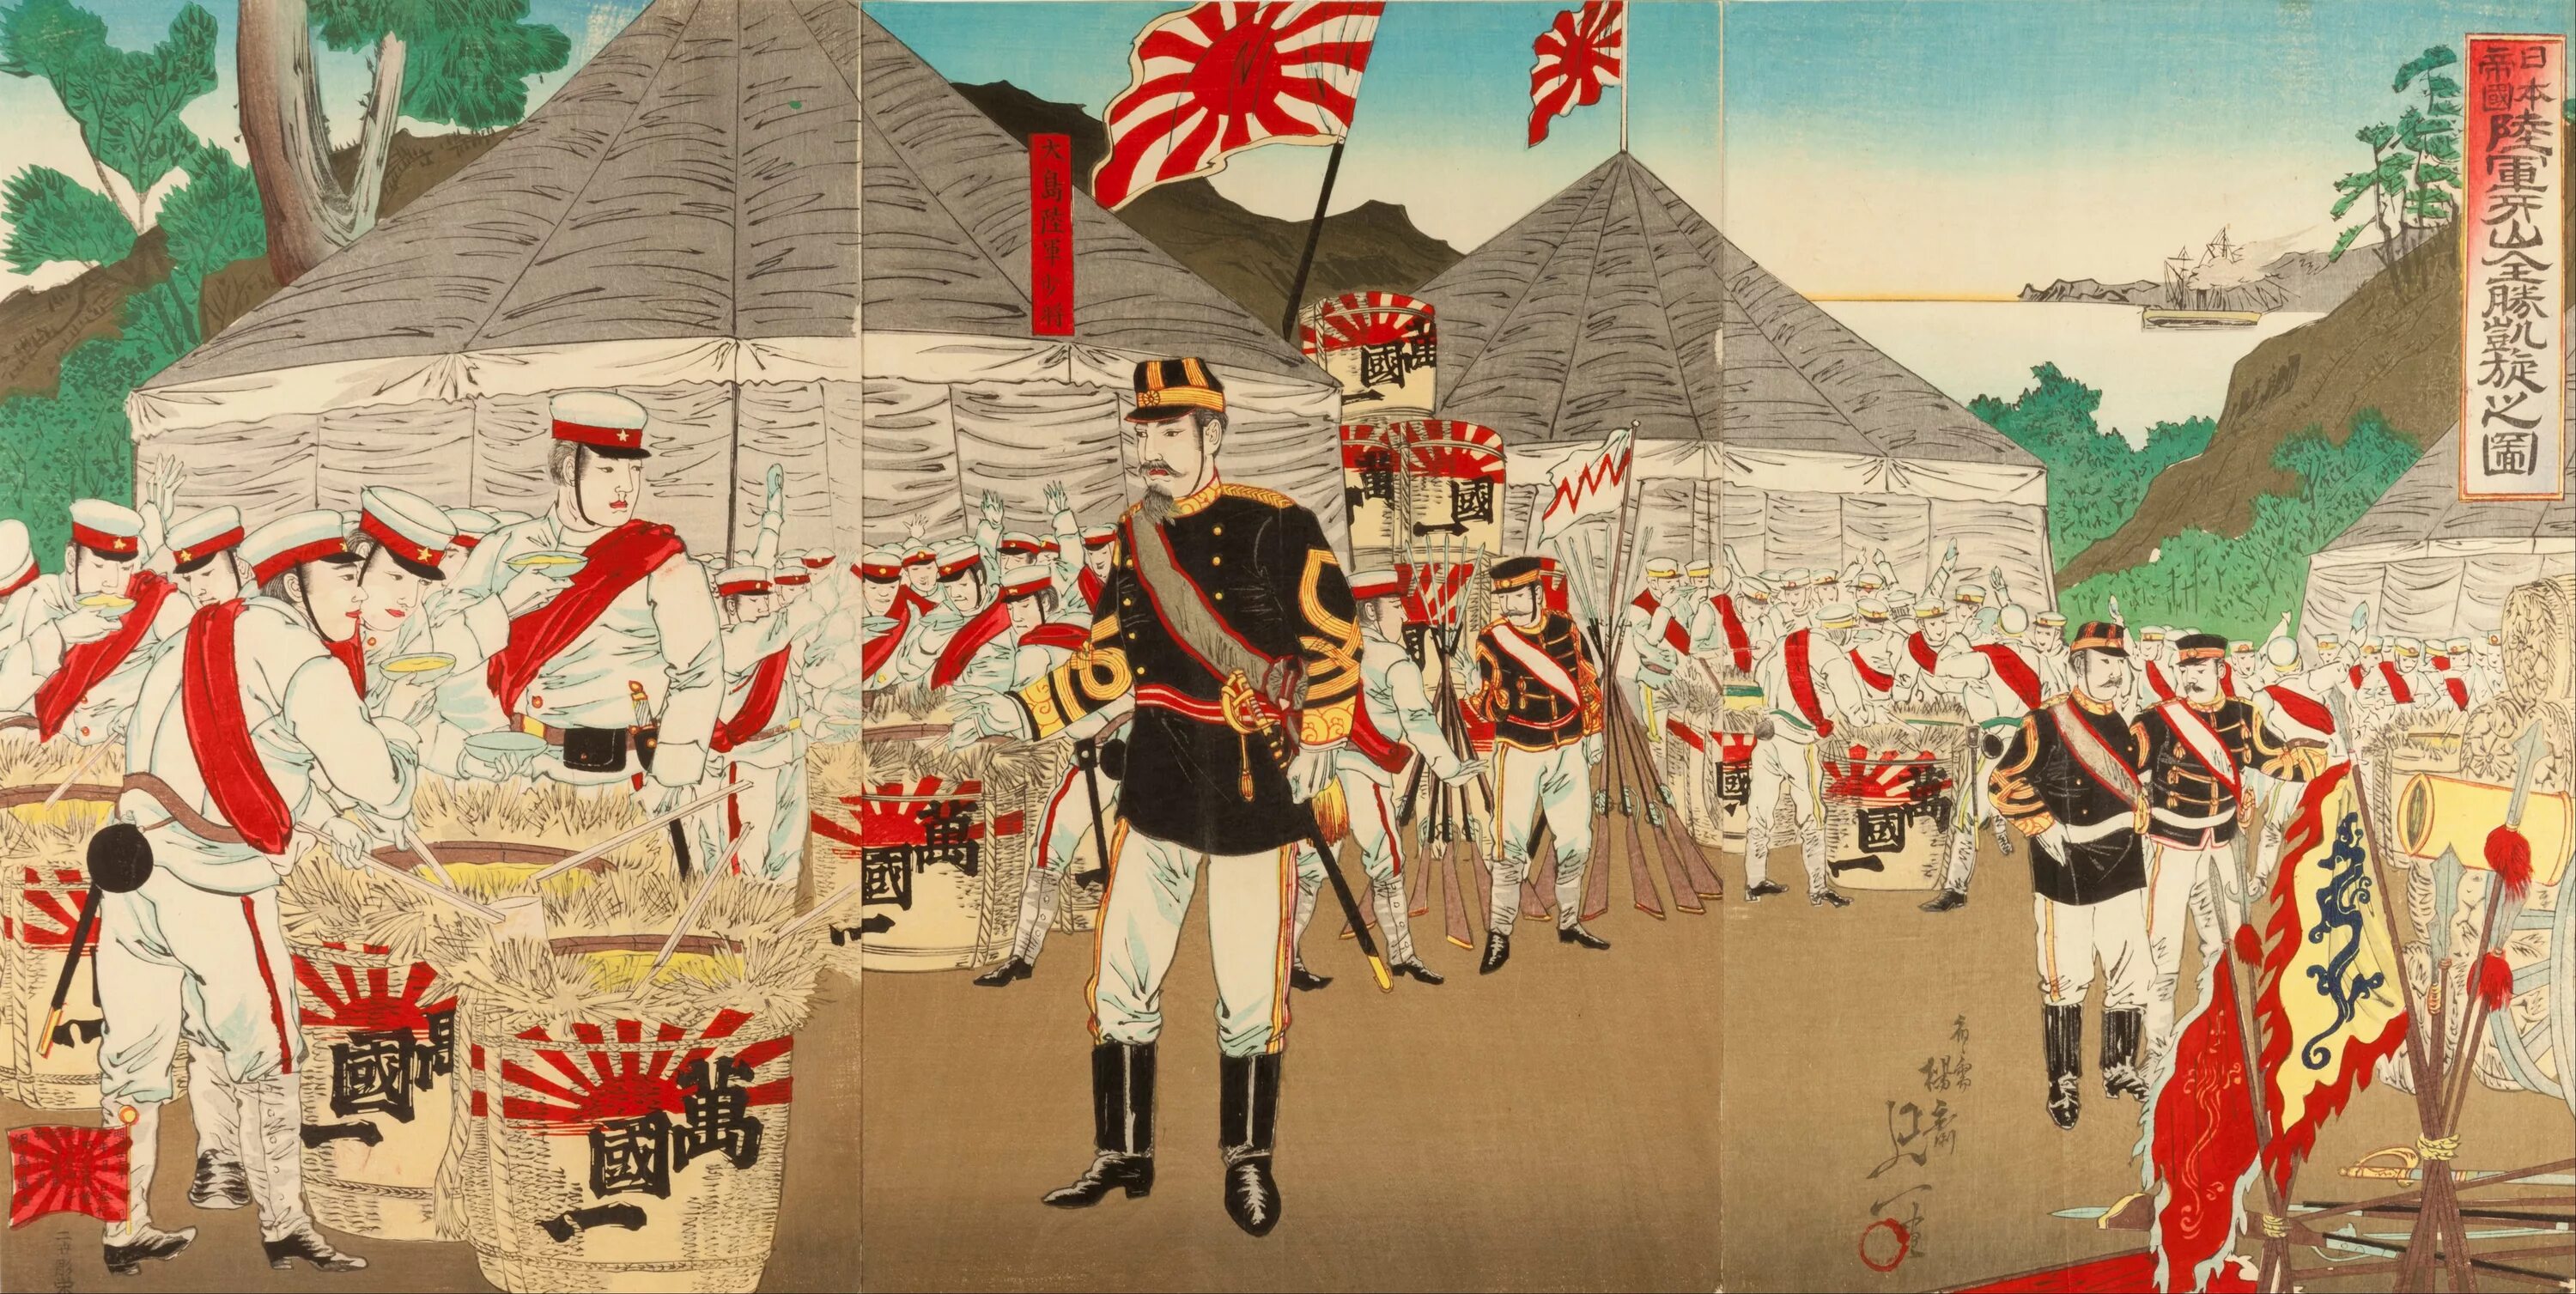 Военный союз японии. Императорская армия Японии революция Мэйдзи. Флаг императорской армии Японии. Флаг японской империи в эпоху Мэйдзи. Японский флаг Мэйдзи.